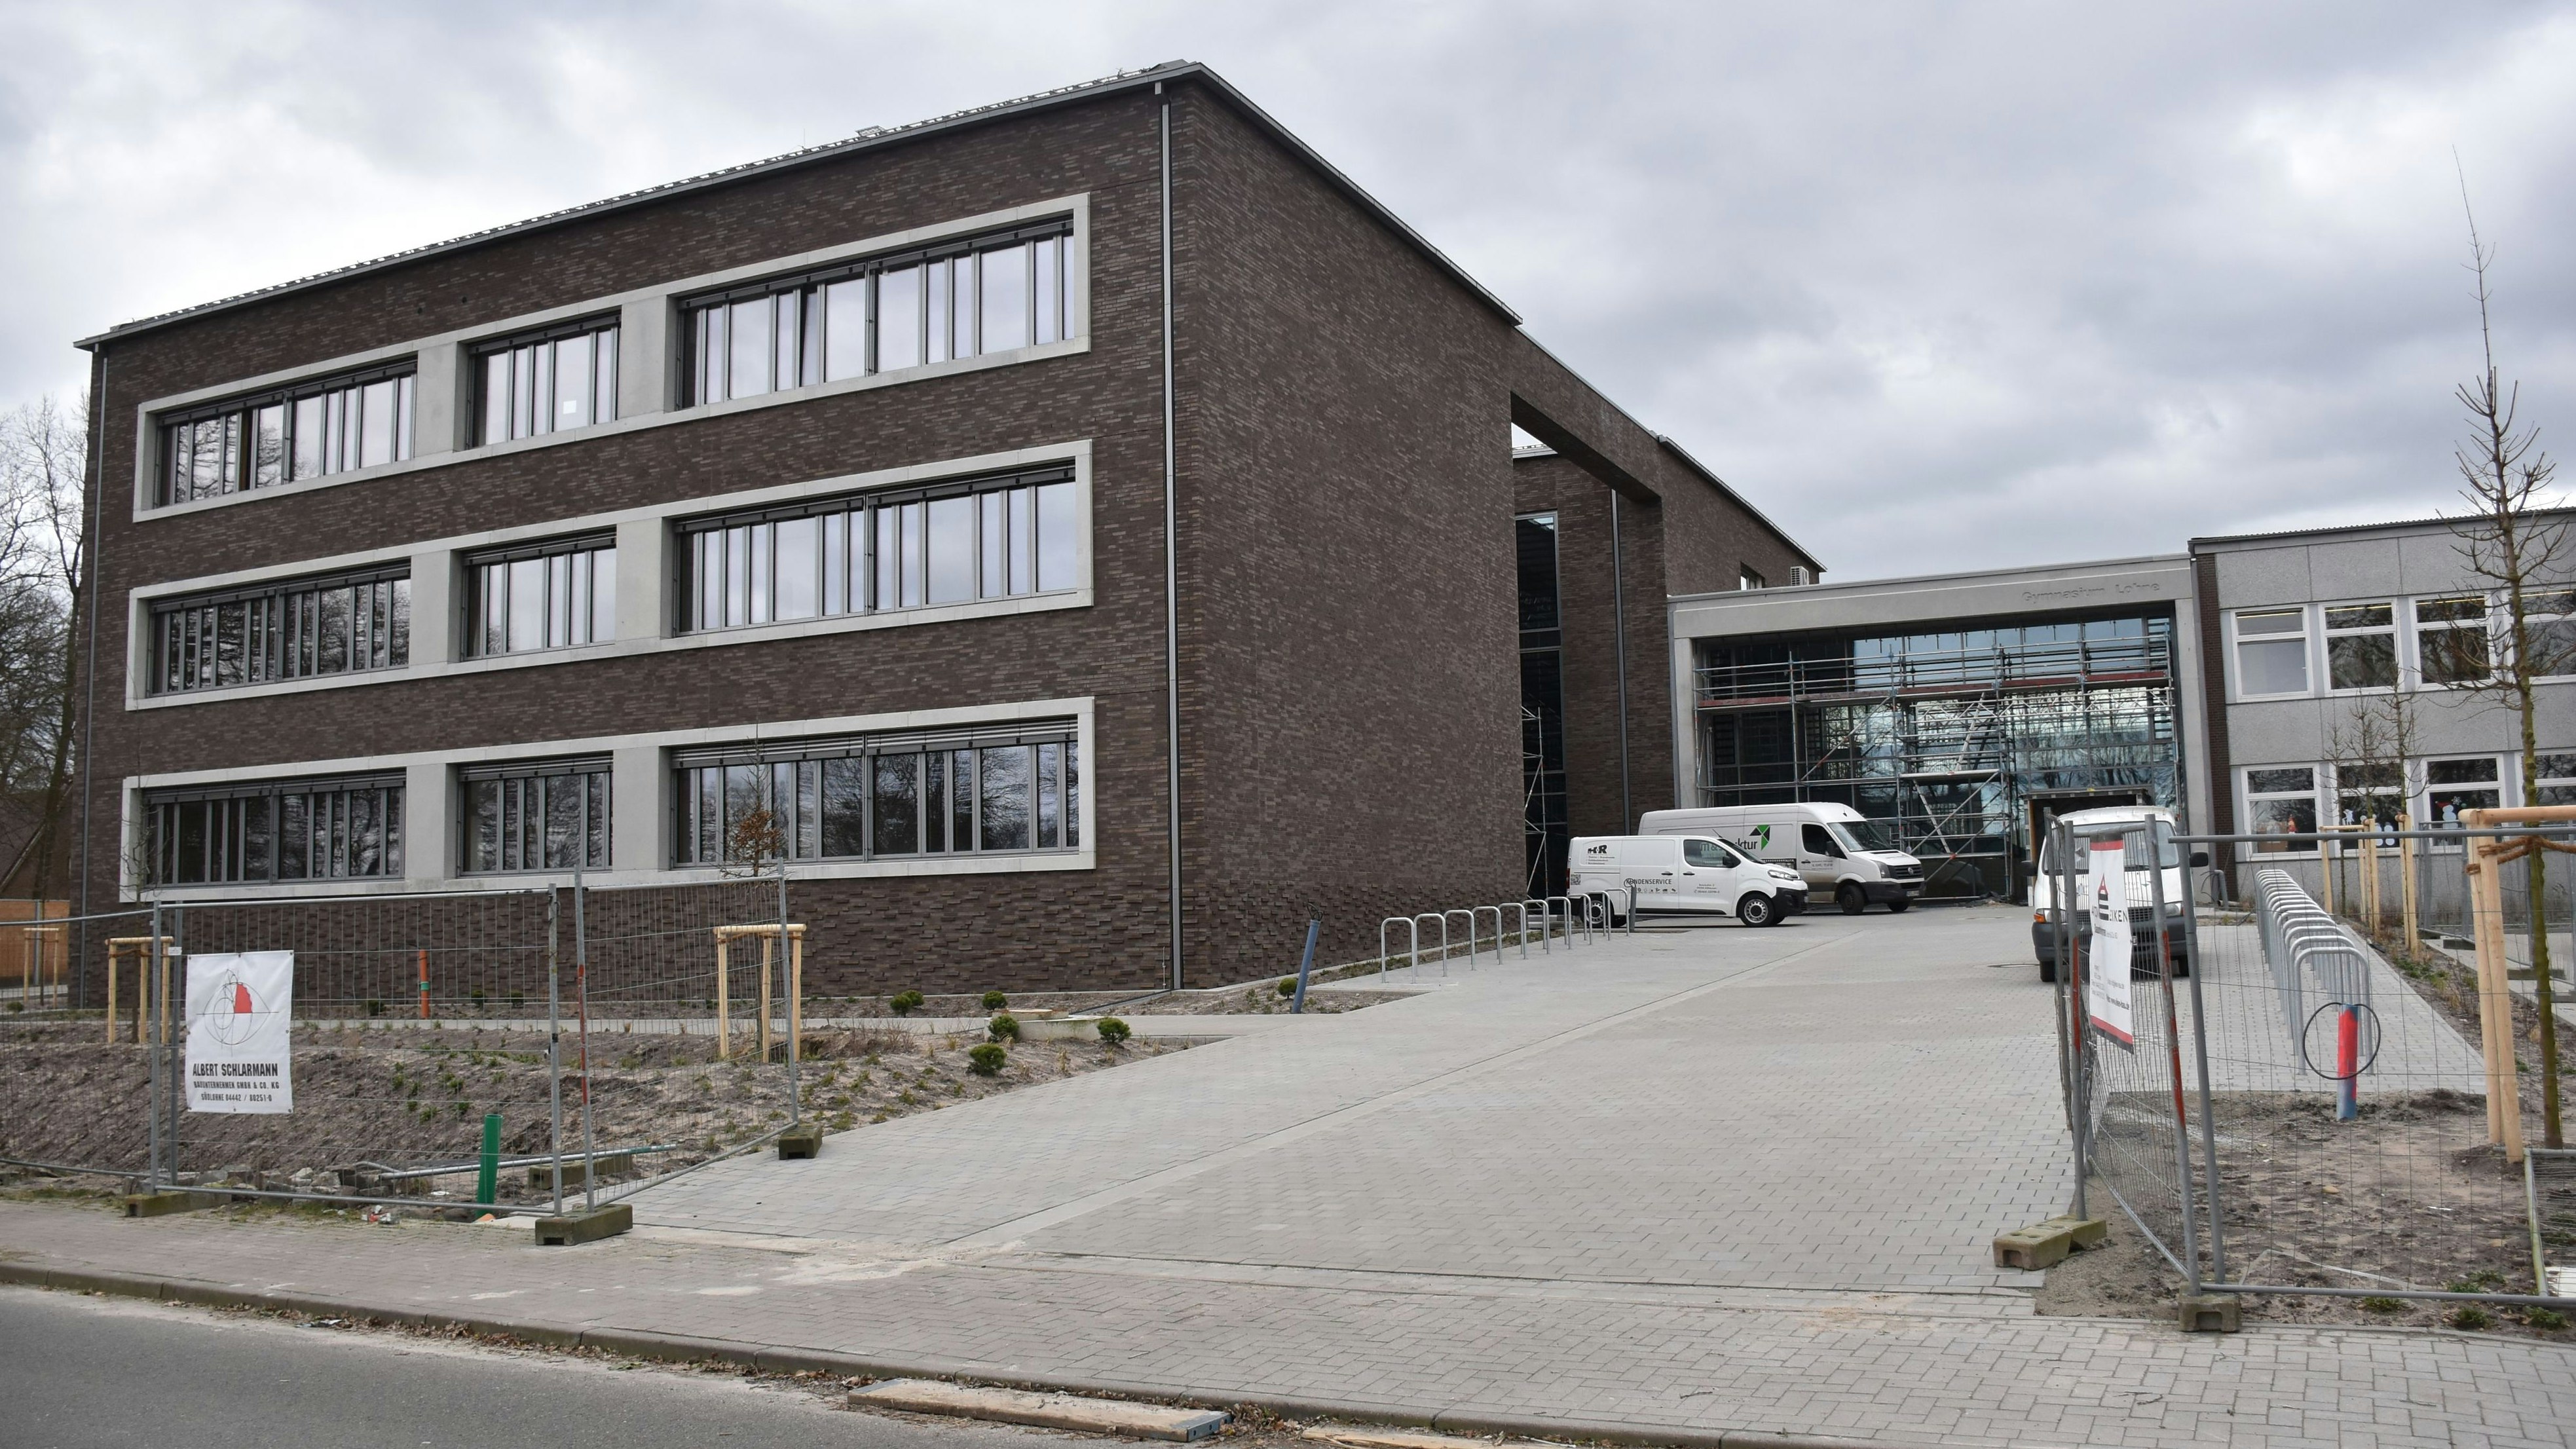 Ein kostspieliges Bauvorhaben: 11,625 Millionen Euro investiert der Landkreis Vechta in die Erweiterung des Gymnasiums Lohne. Foto: Timphaus